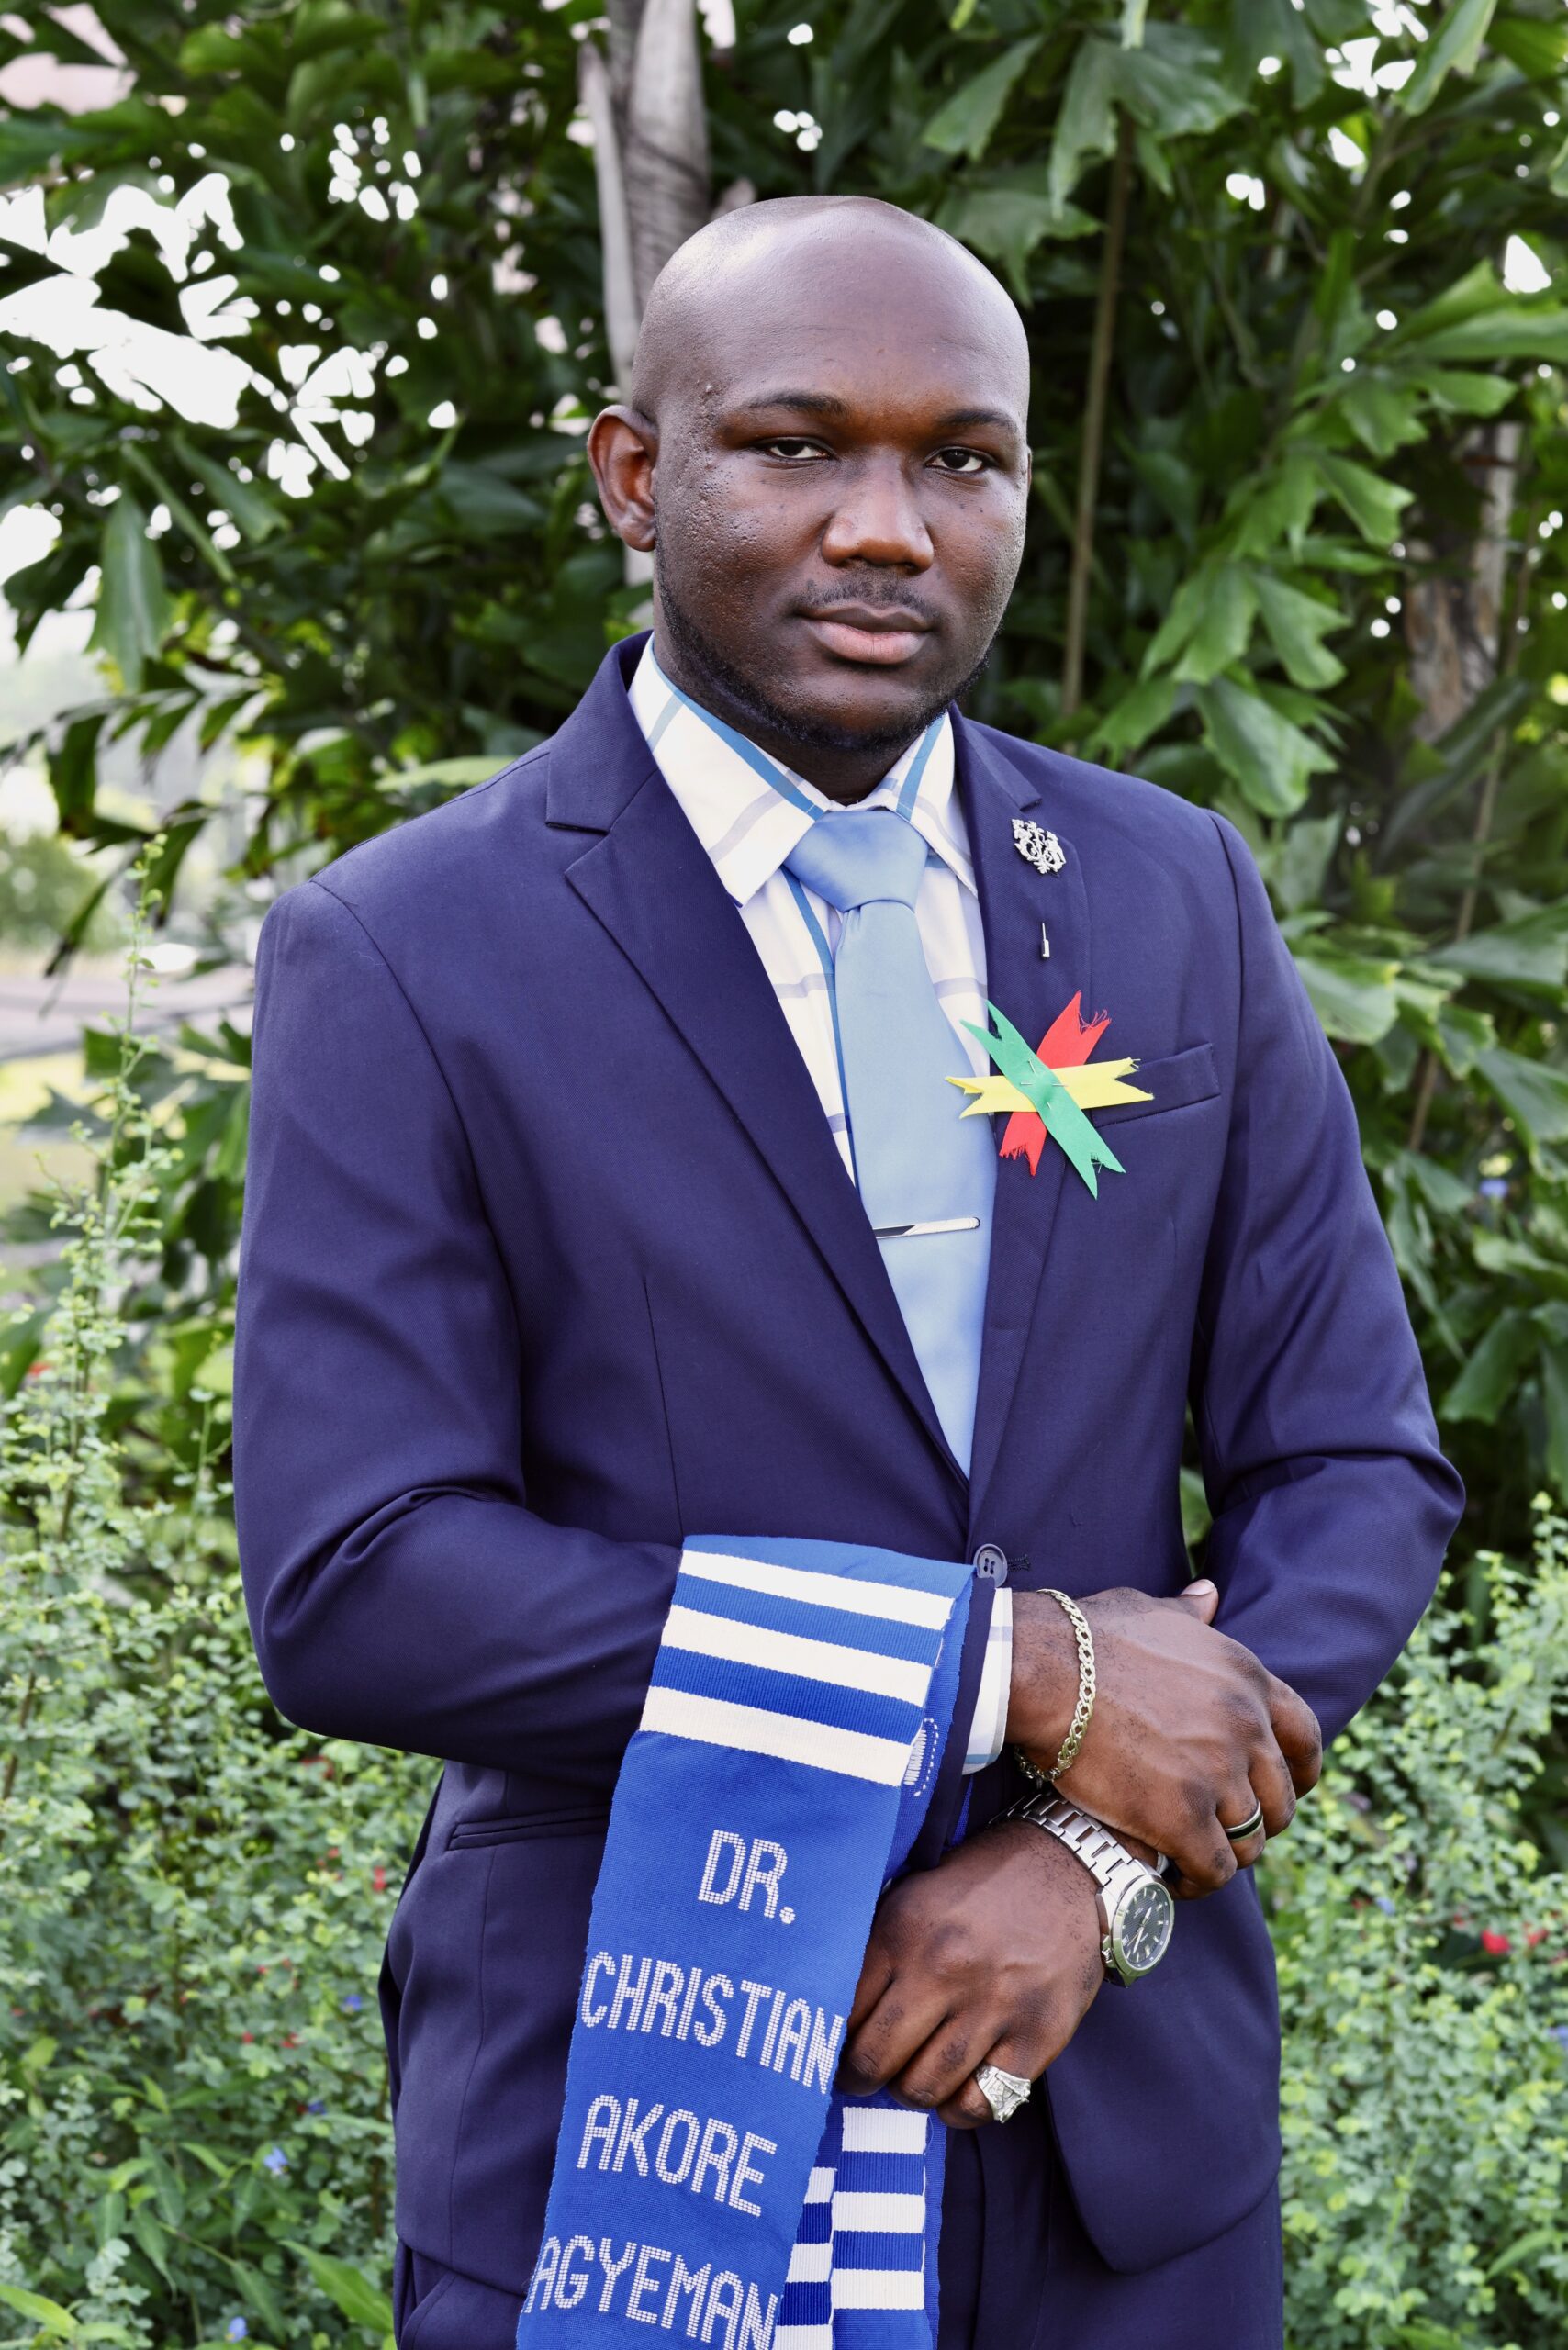 Dr. Christian Akore Agyemang